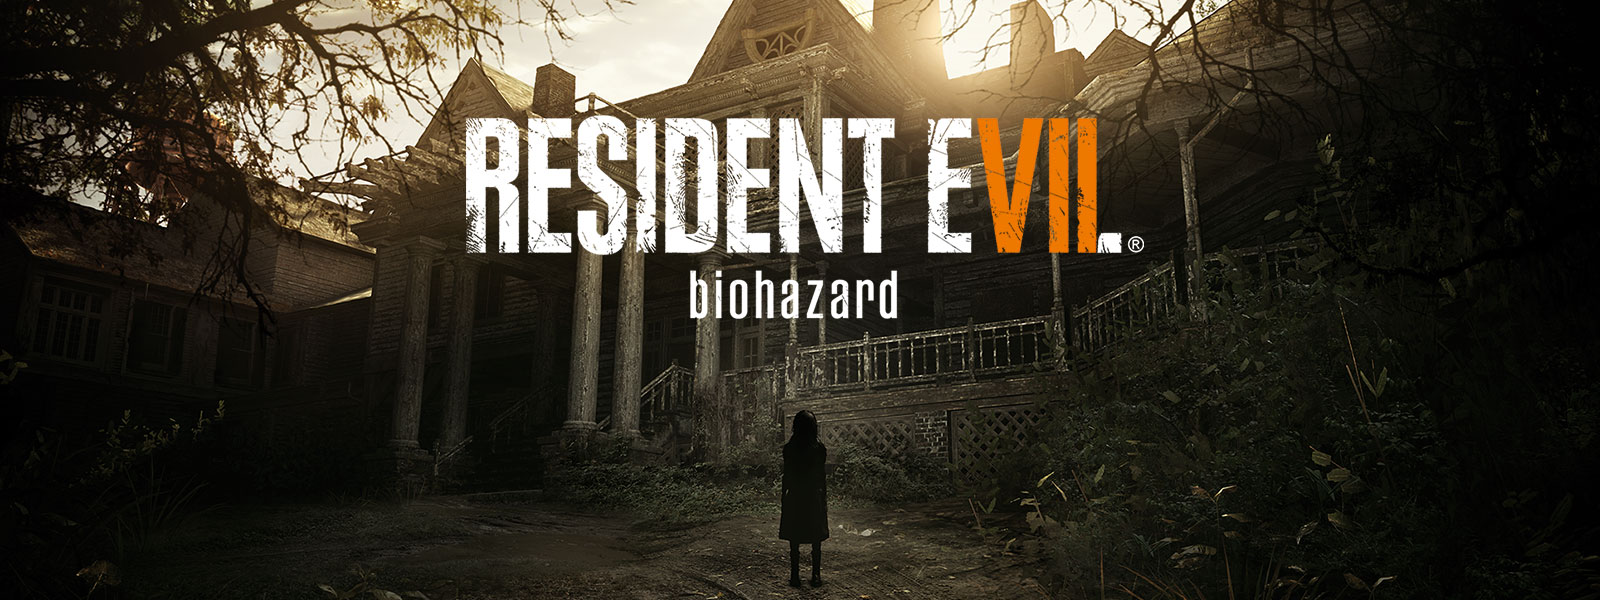 Snímek krabice Resident Evil 7 biohazard gold edition nad scénou strašidelné dívky stojící před strašidelným domem